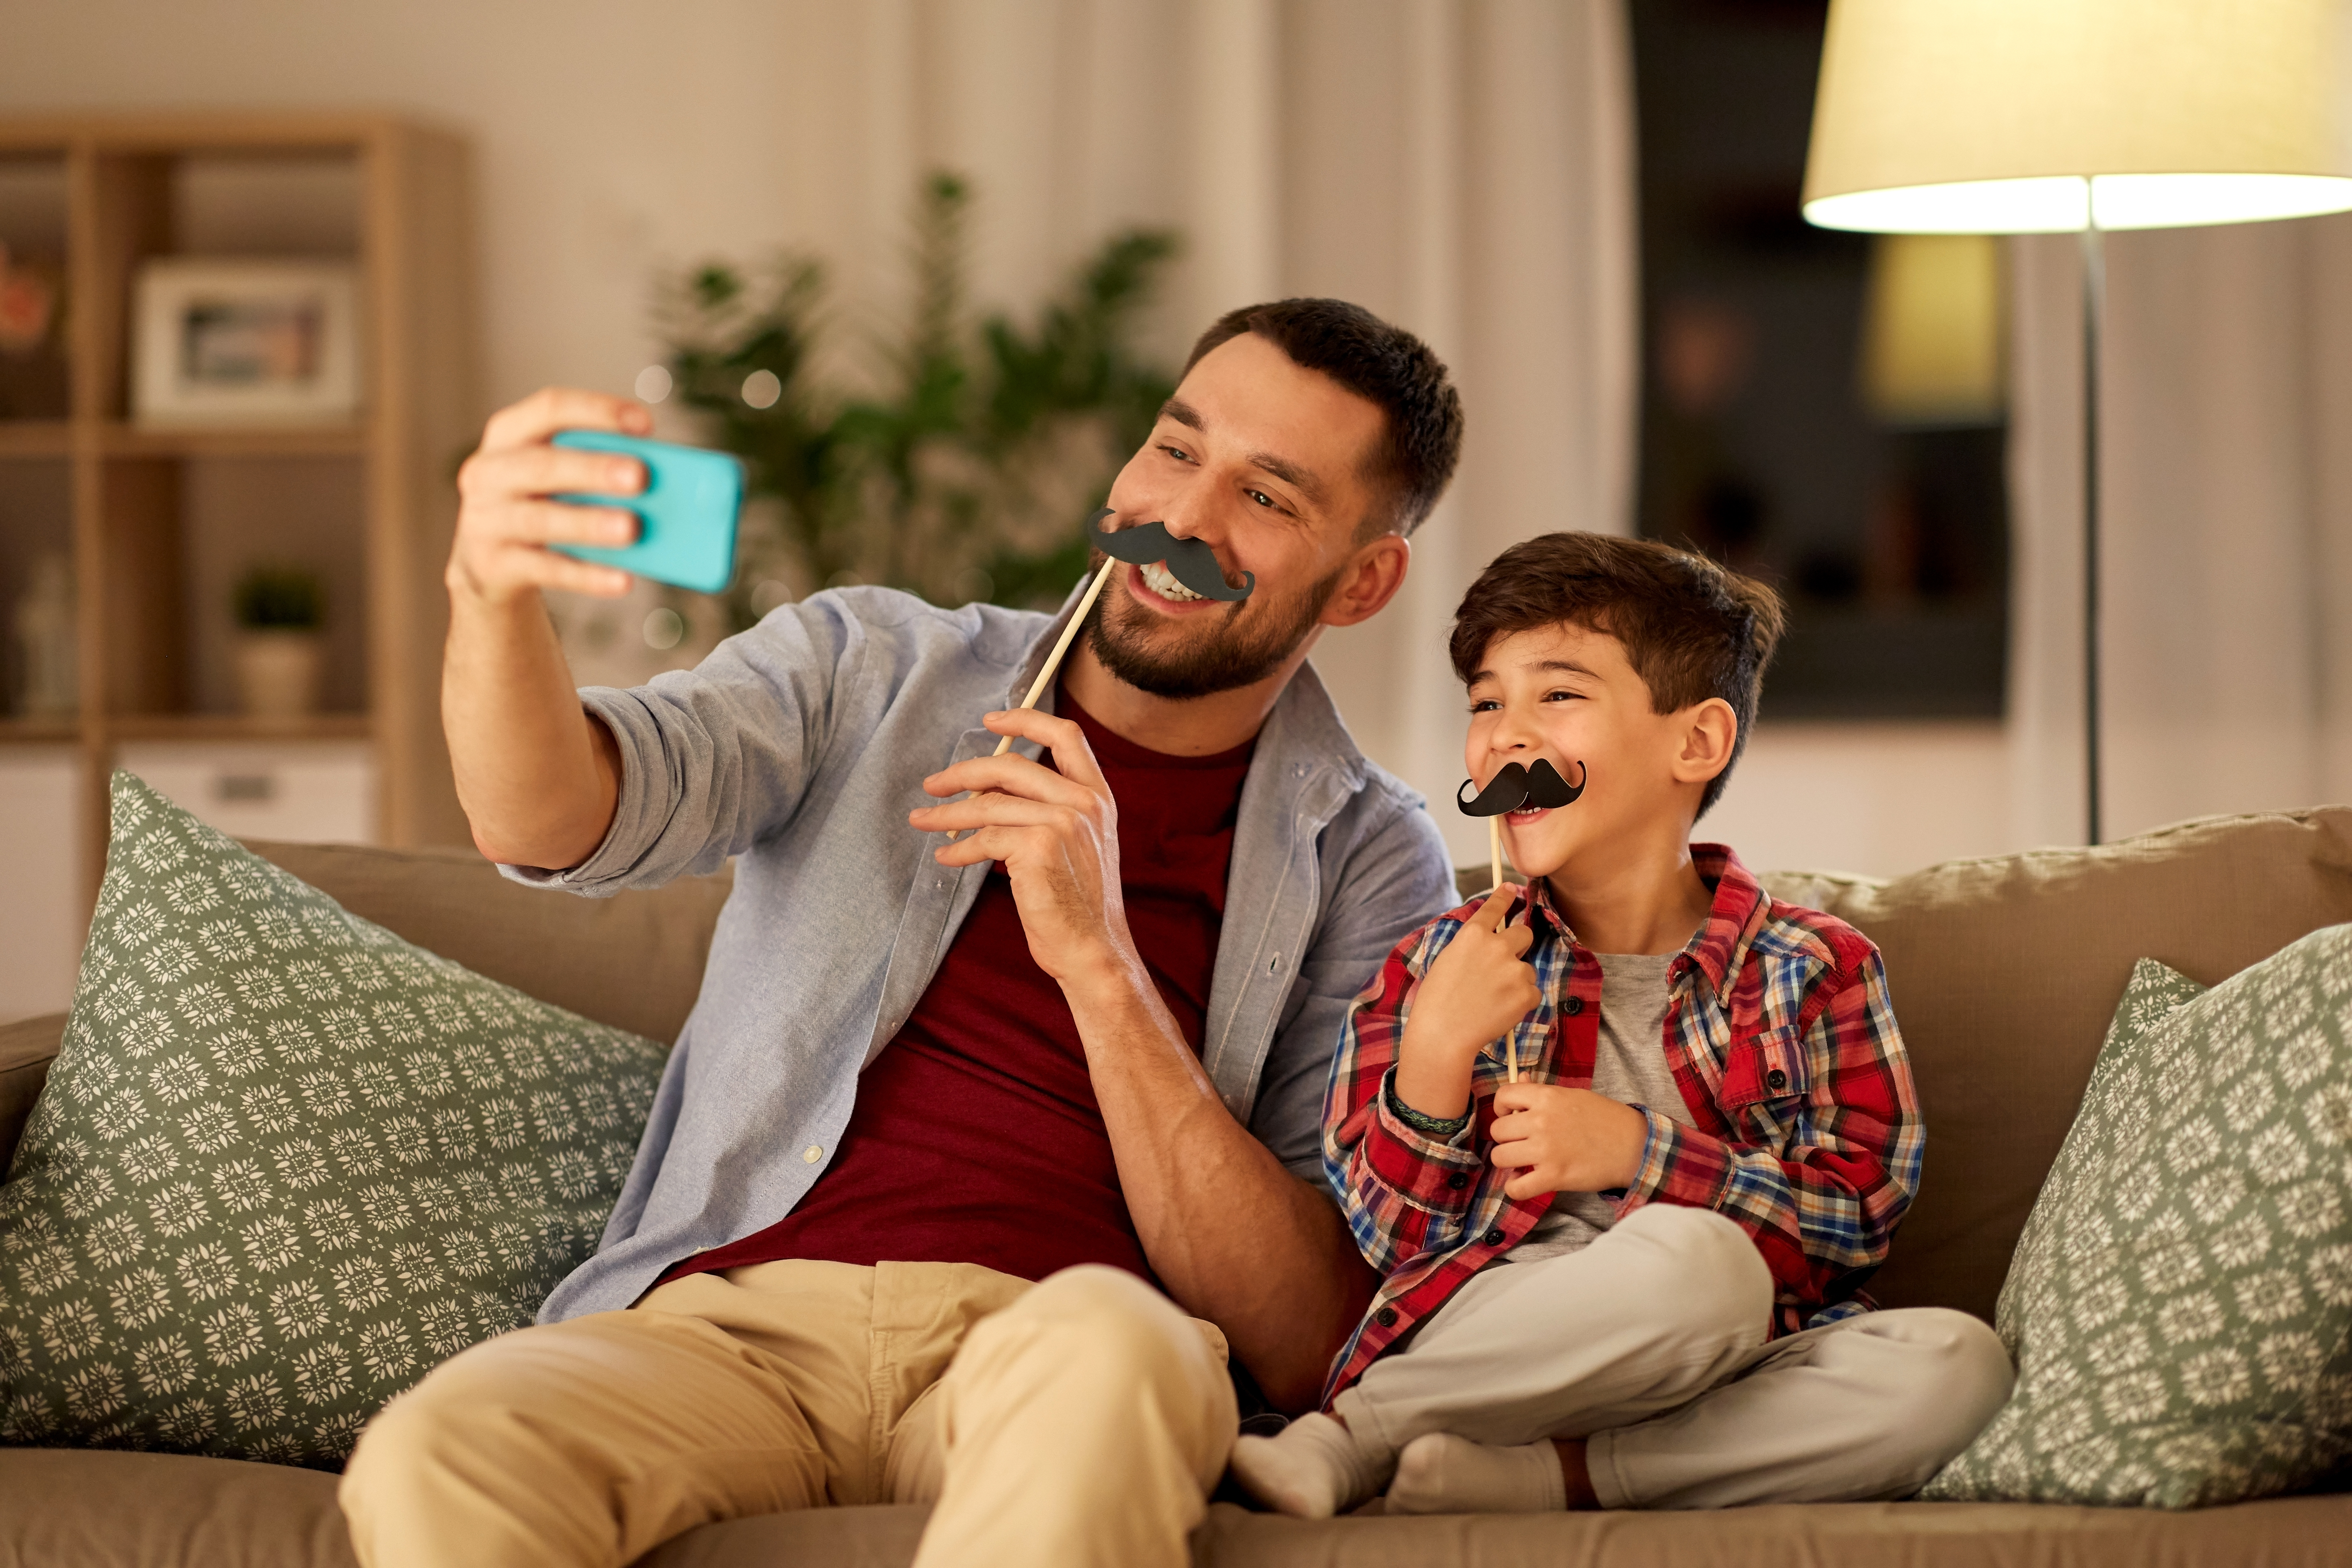 Los padres de familia deben tomar un rol de entretenimiento y acompañamiento para sus hijos y así organizar actividades que favorezcan su interacción. (Foto Prensa Libre: Shutterstock). 